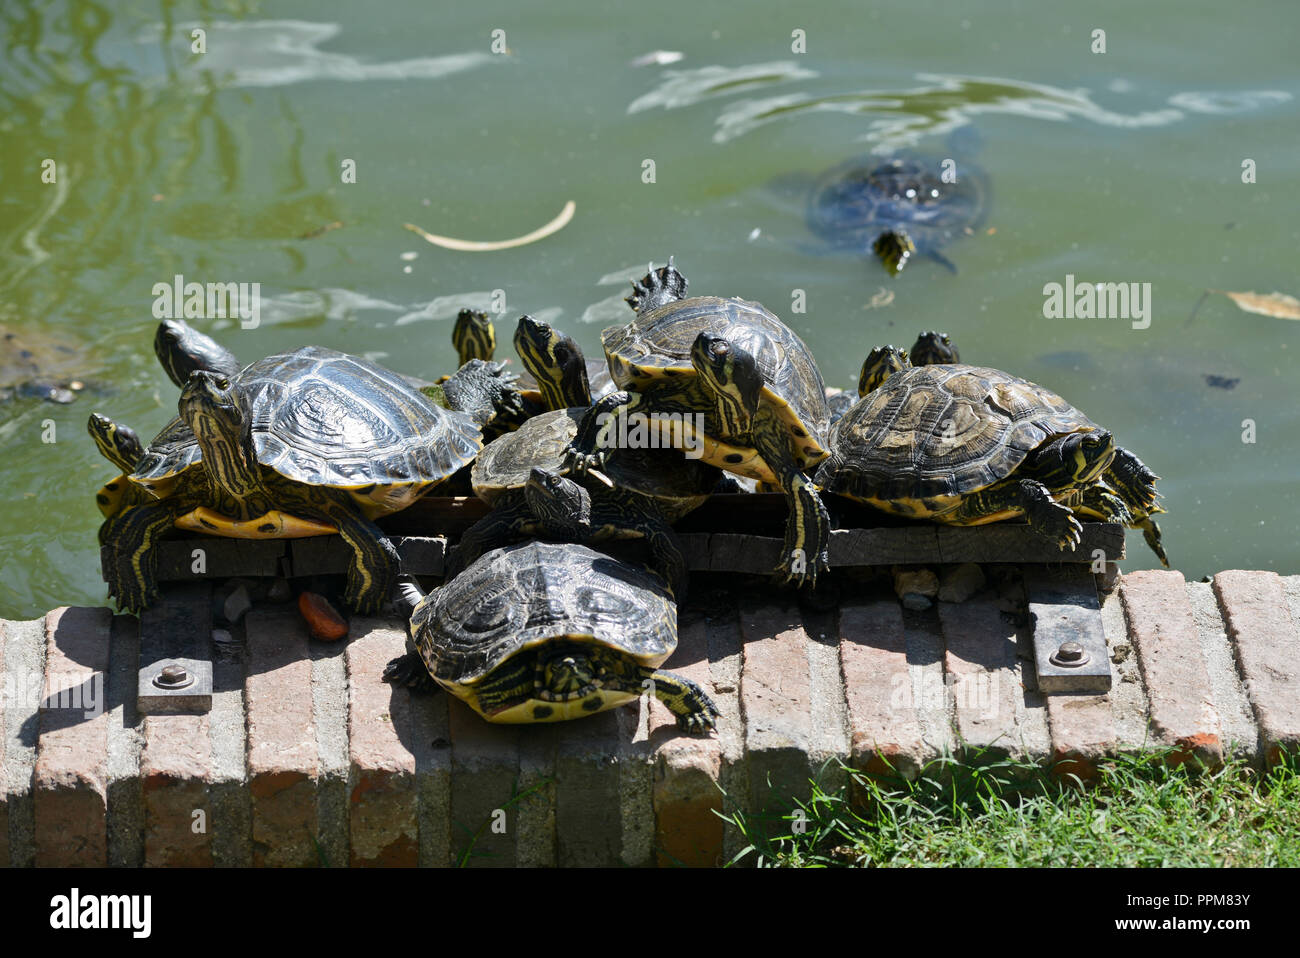 Turtles sunbathing. Buen Retiro Park - Parque del Buen Retiro, Madrid, Spain Stock Photo